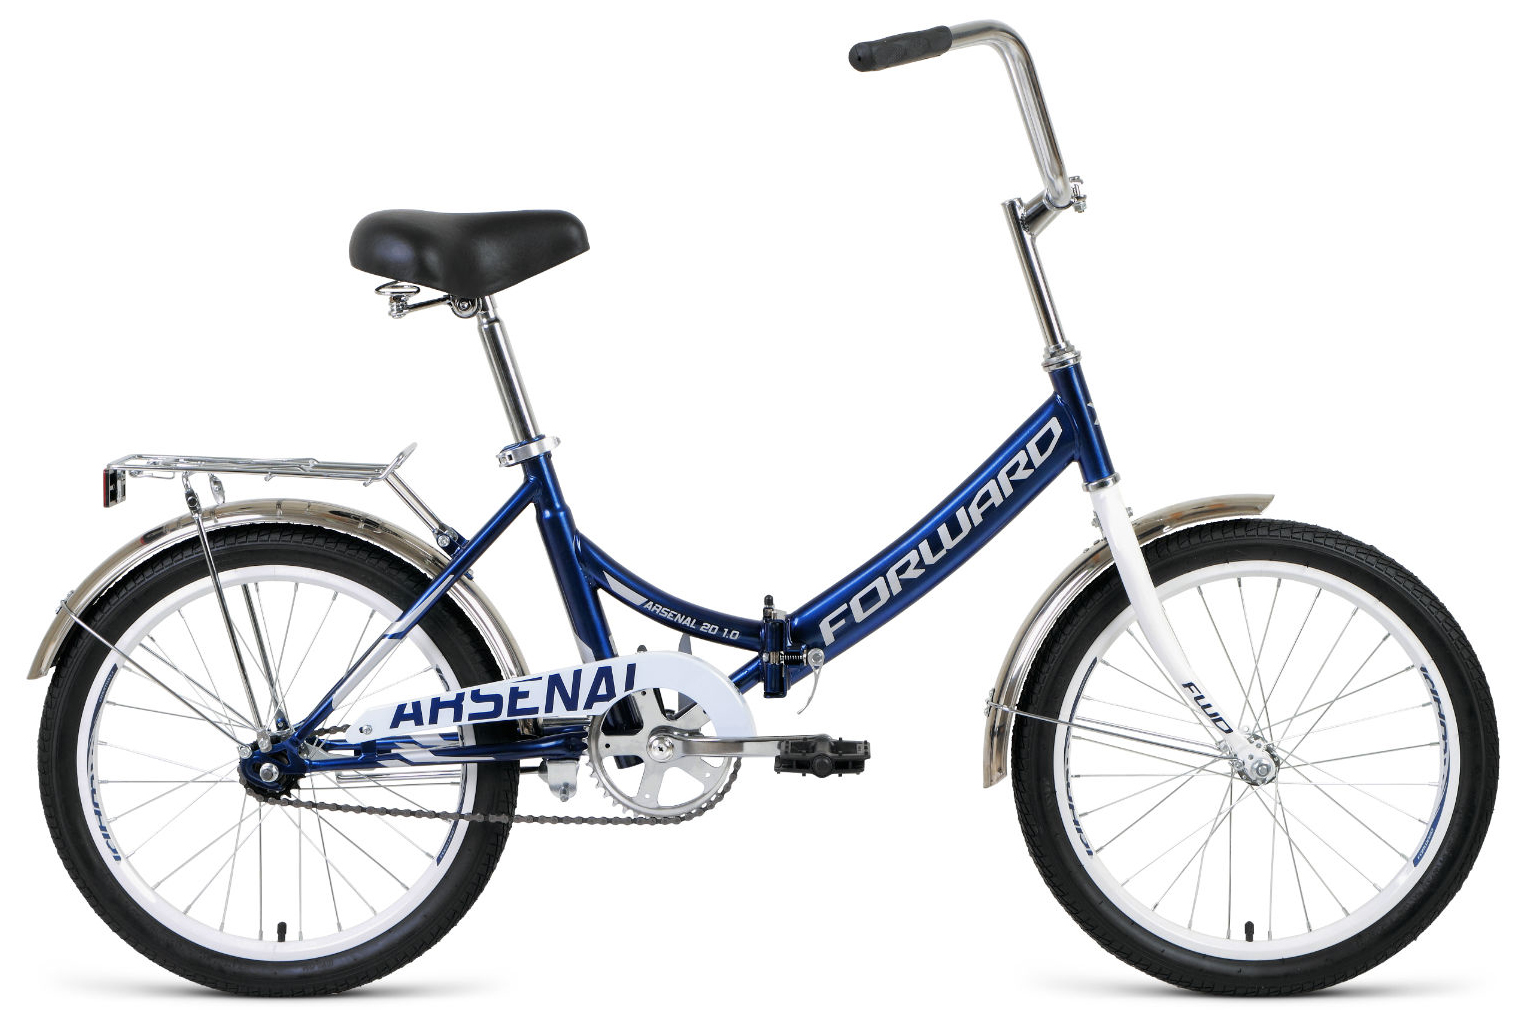  Отзывы о Трехколесный детский велосипед Forward Arsenal 20 1.0 2020